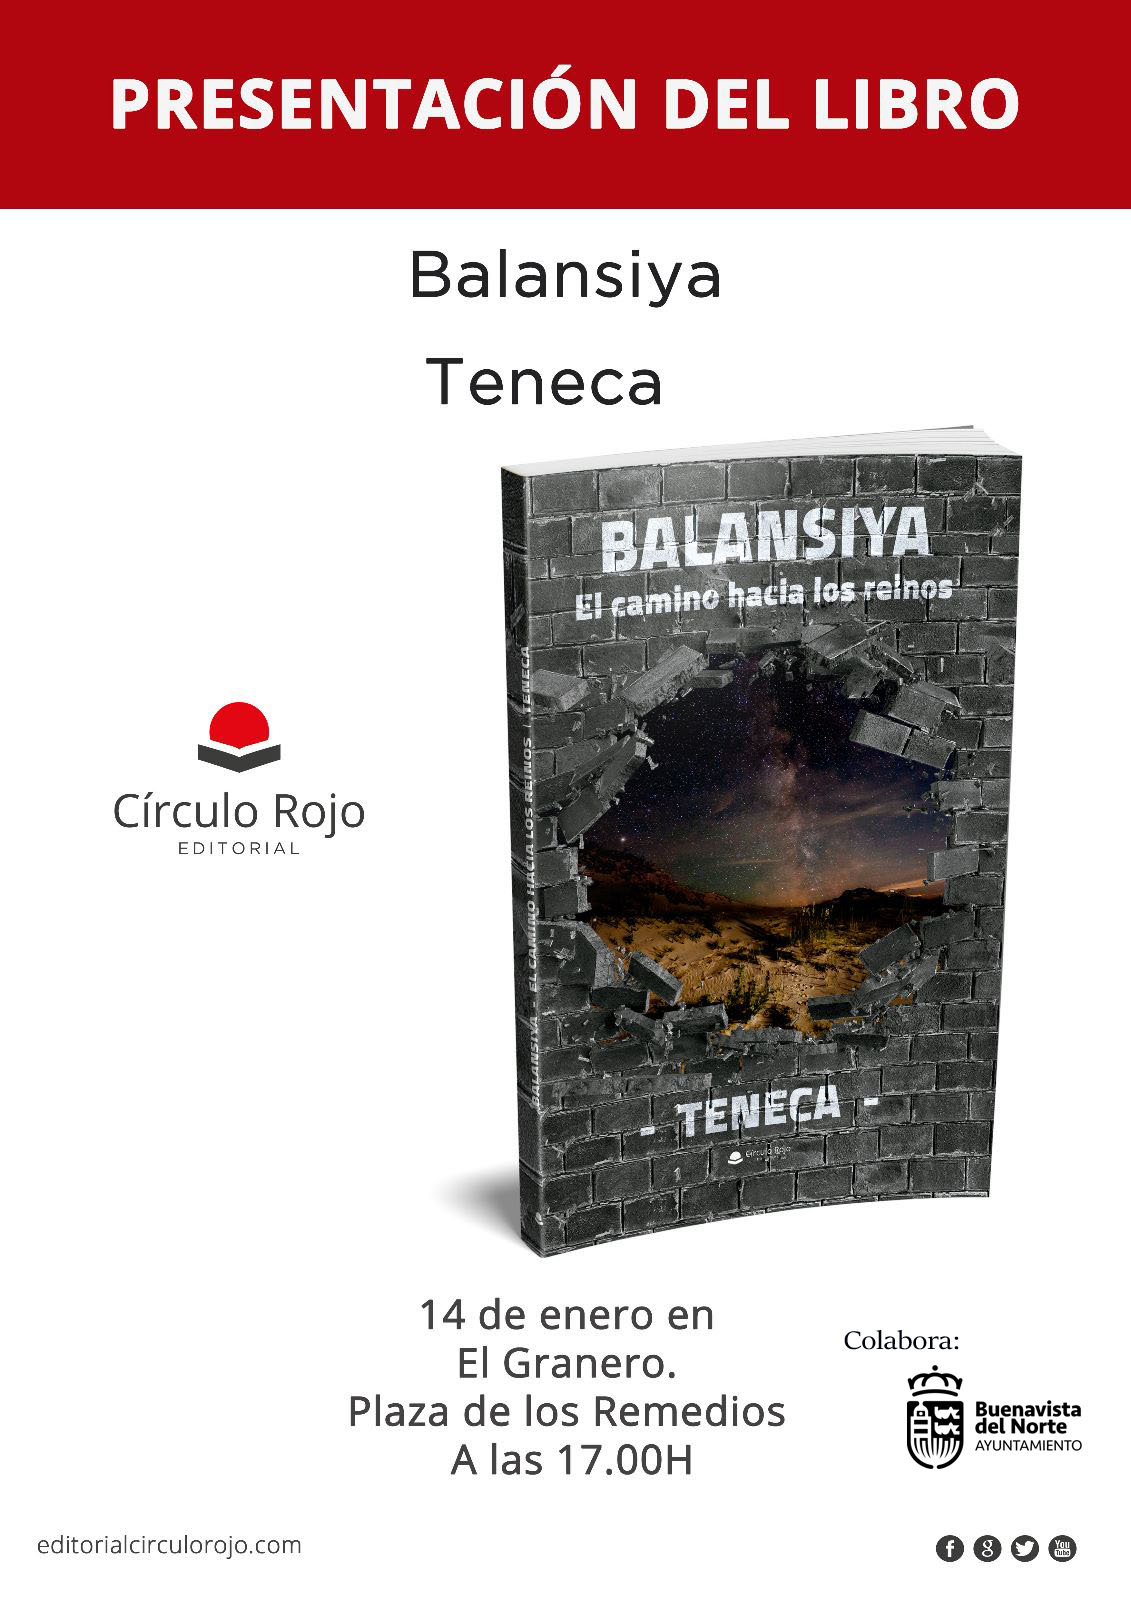 Presentación literaria del libro: Balansiya. El camino hacia los reinos